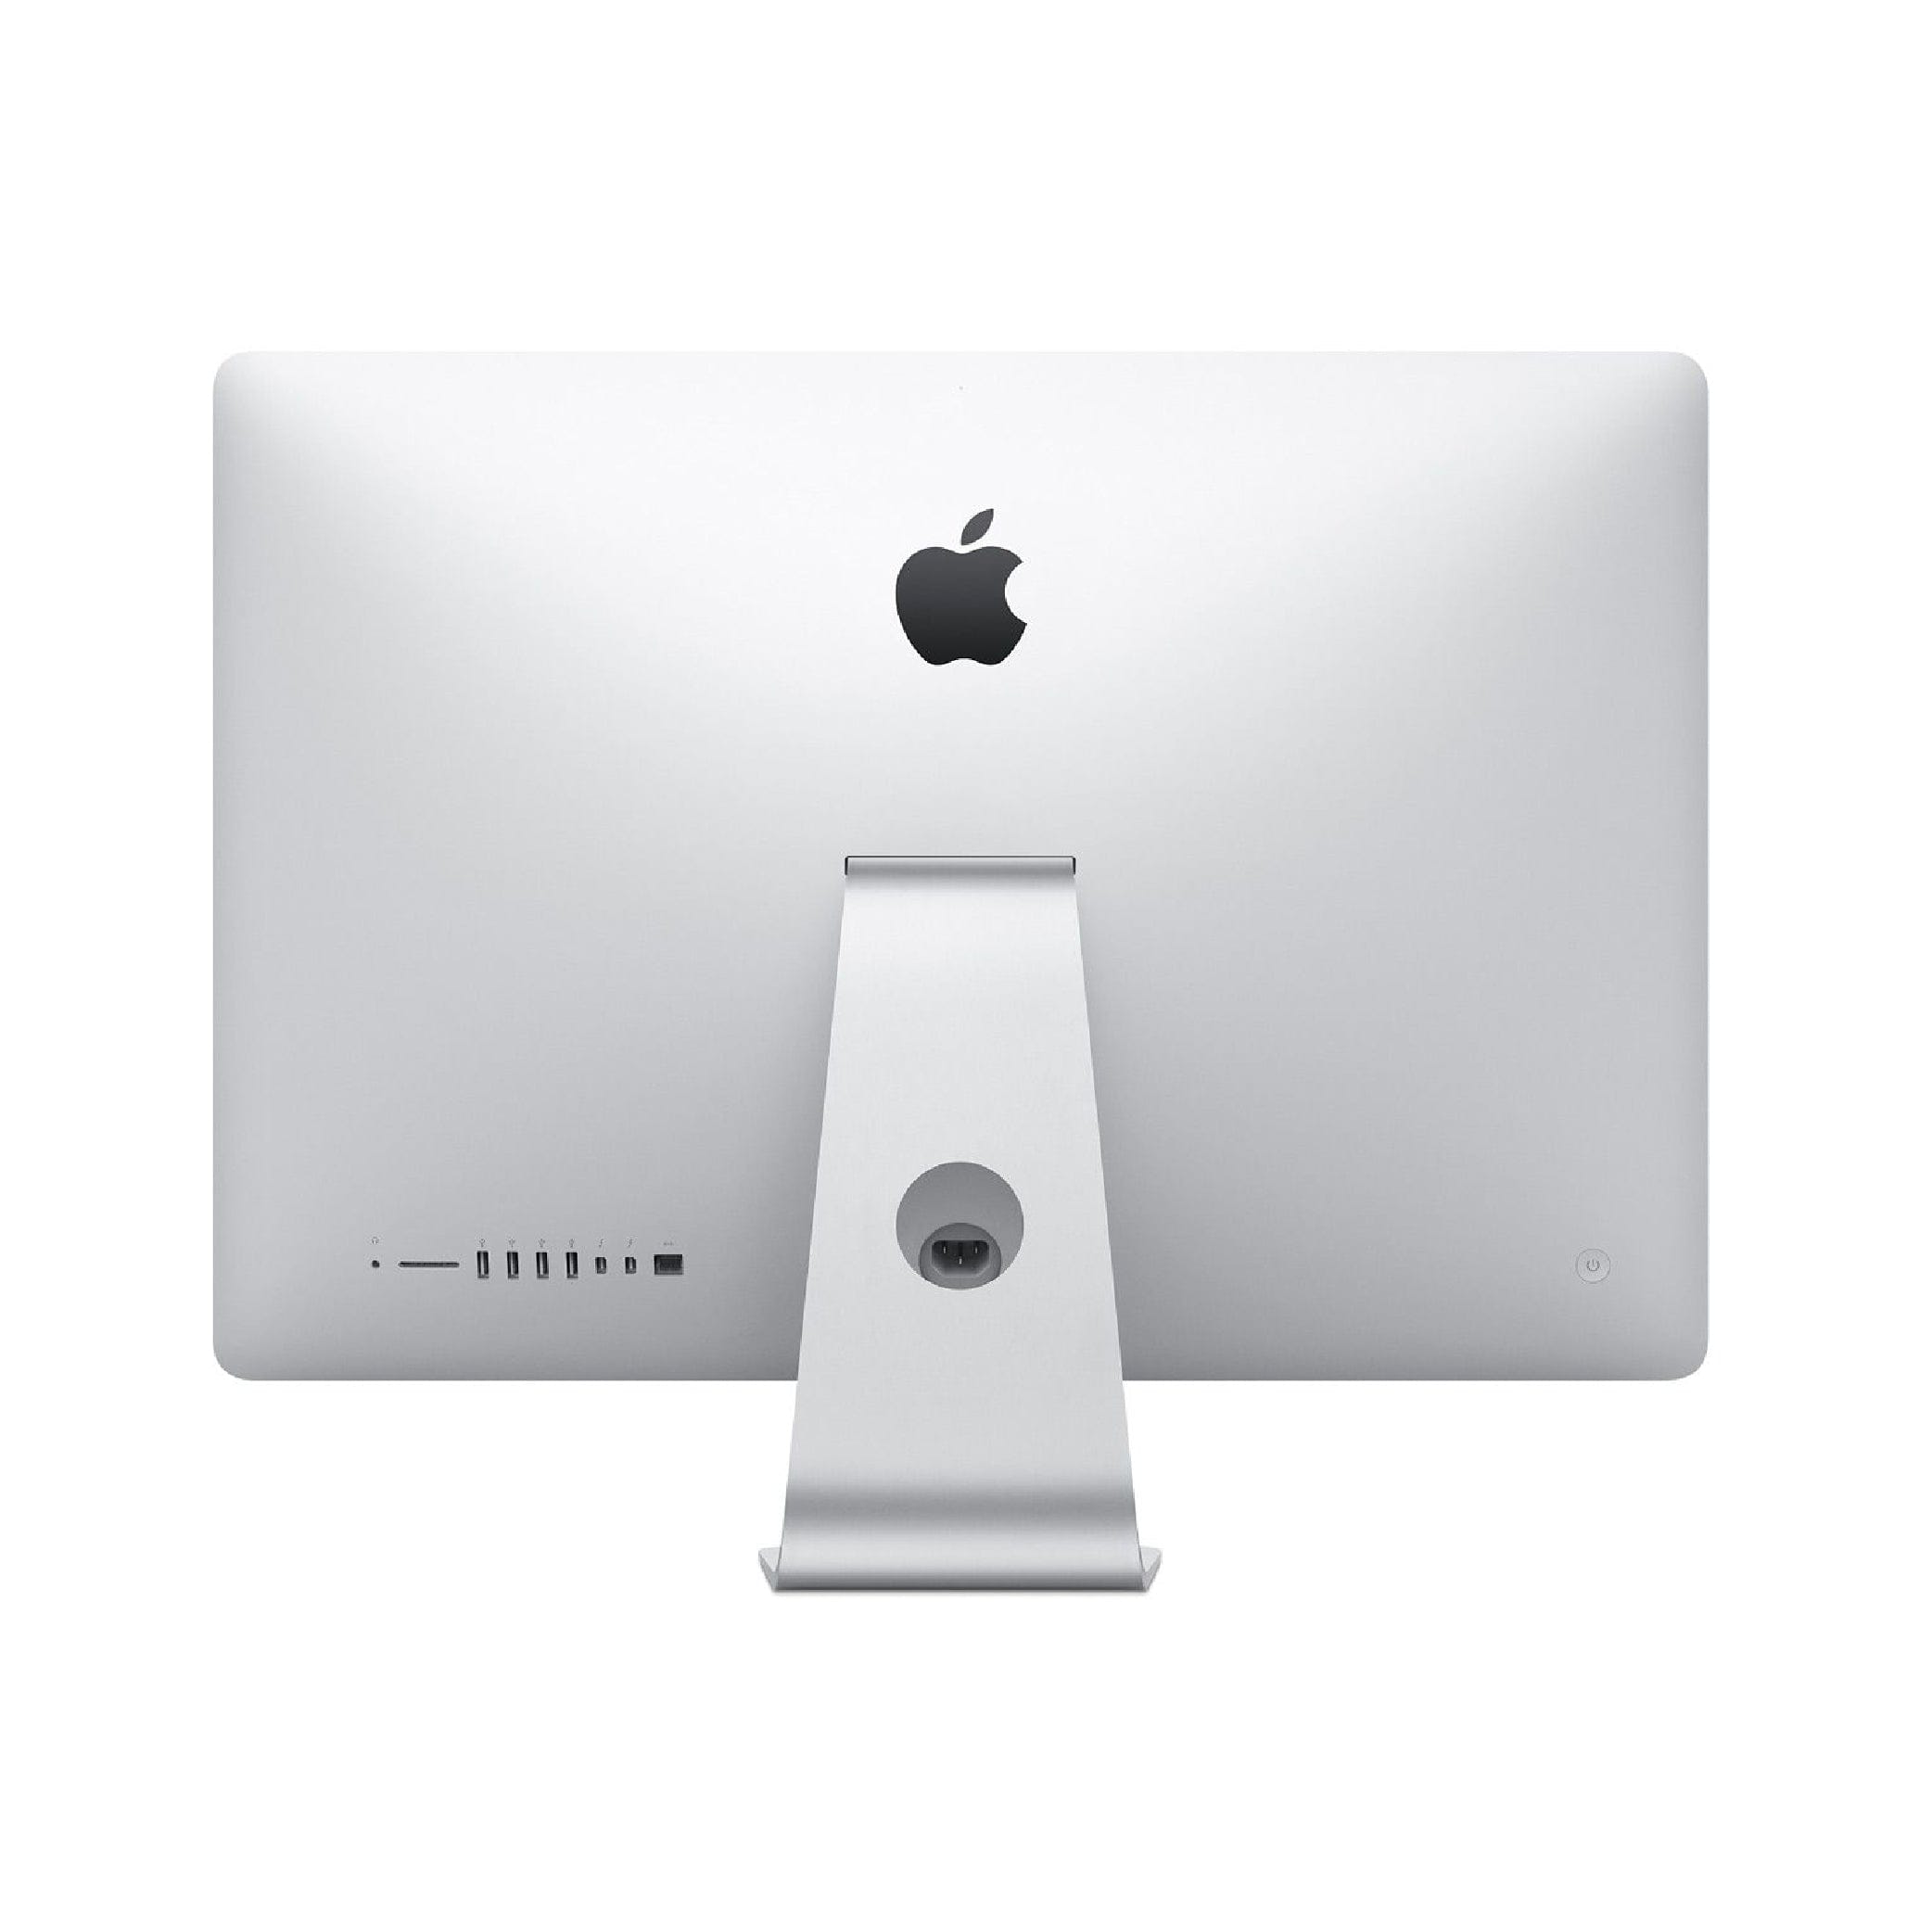 Apple iMac Retina - 27-inch 5K display (2020) -  Intel Core i5 (3.1GHz) -  8GB 256GB SSD - MXWT2LL/A -  Silver